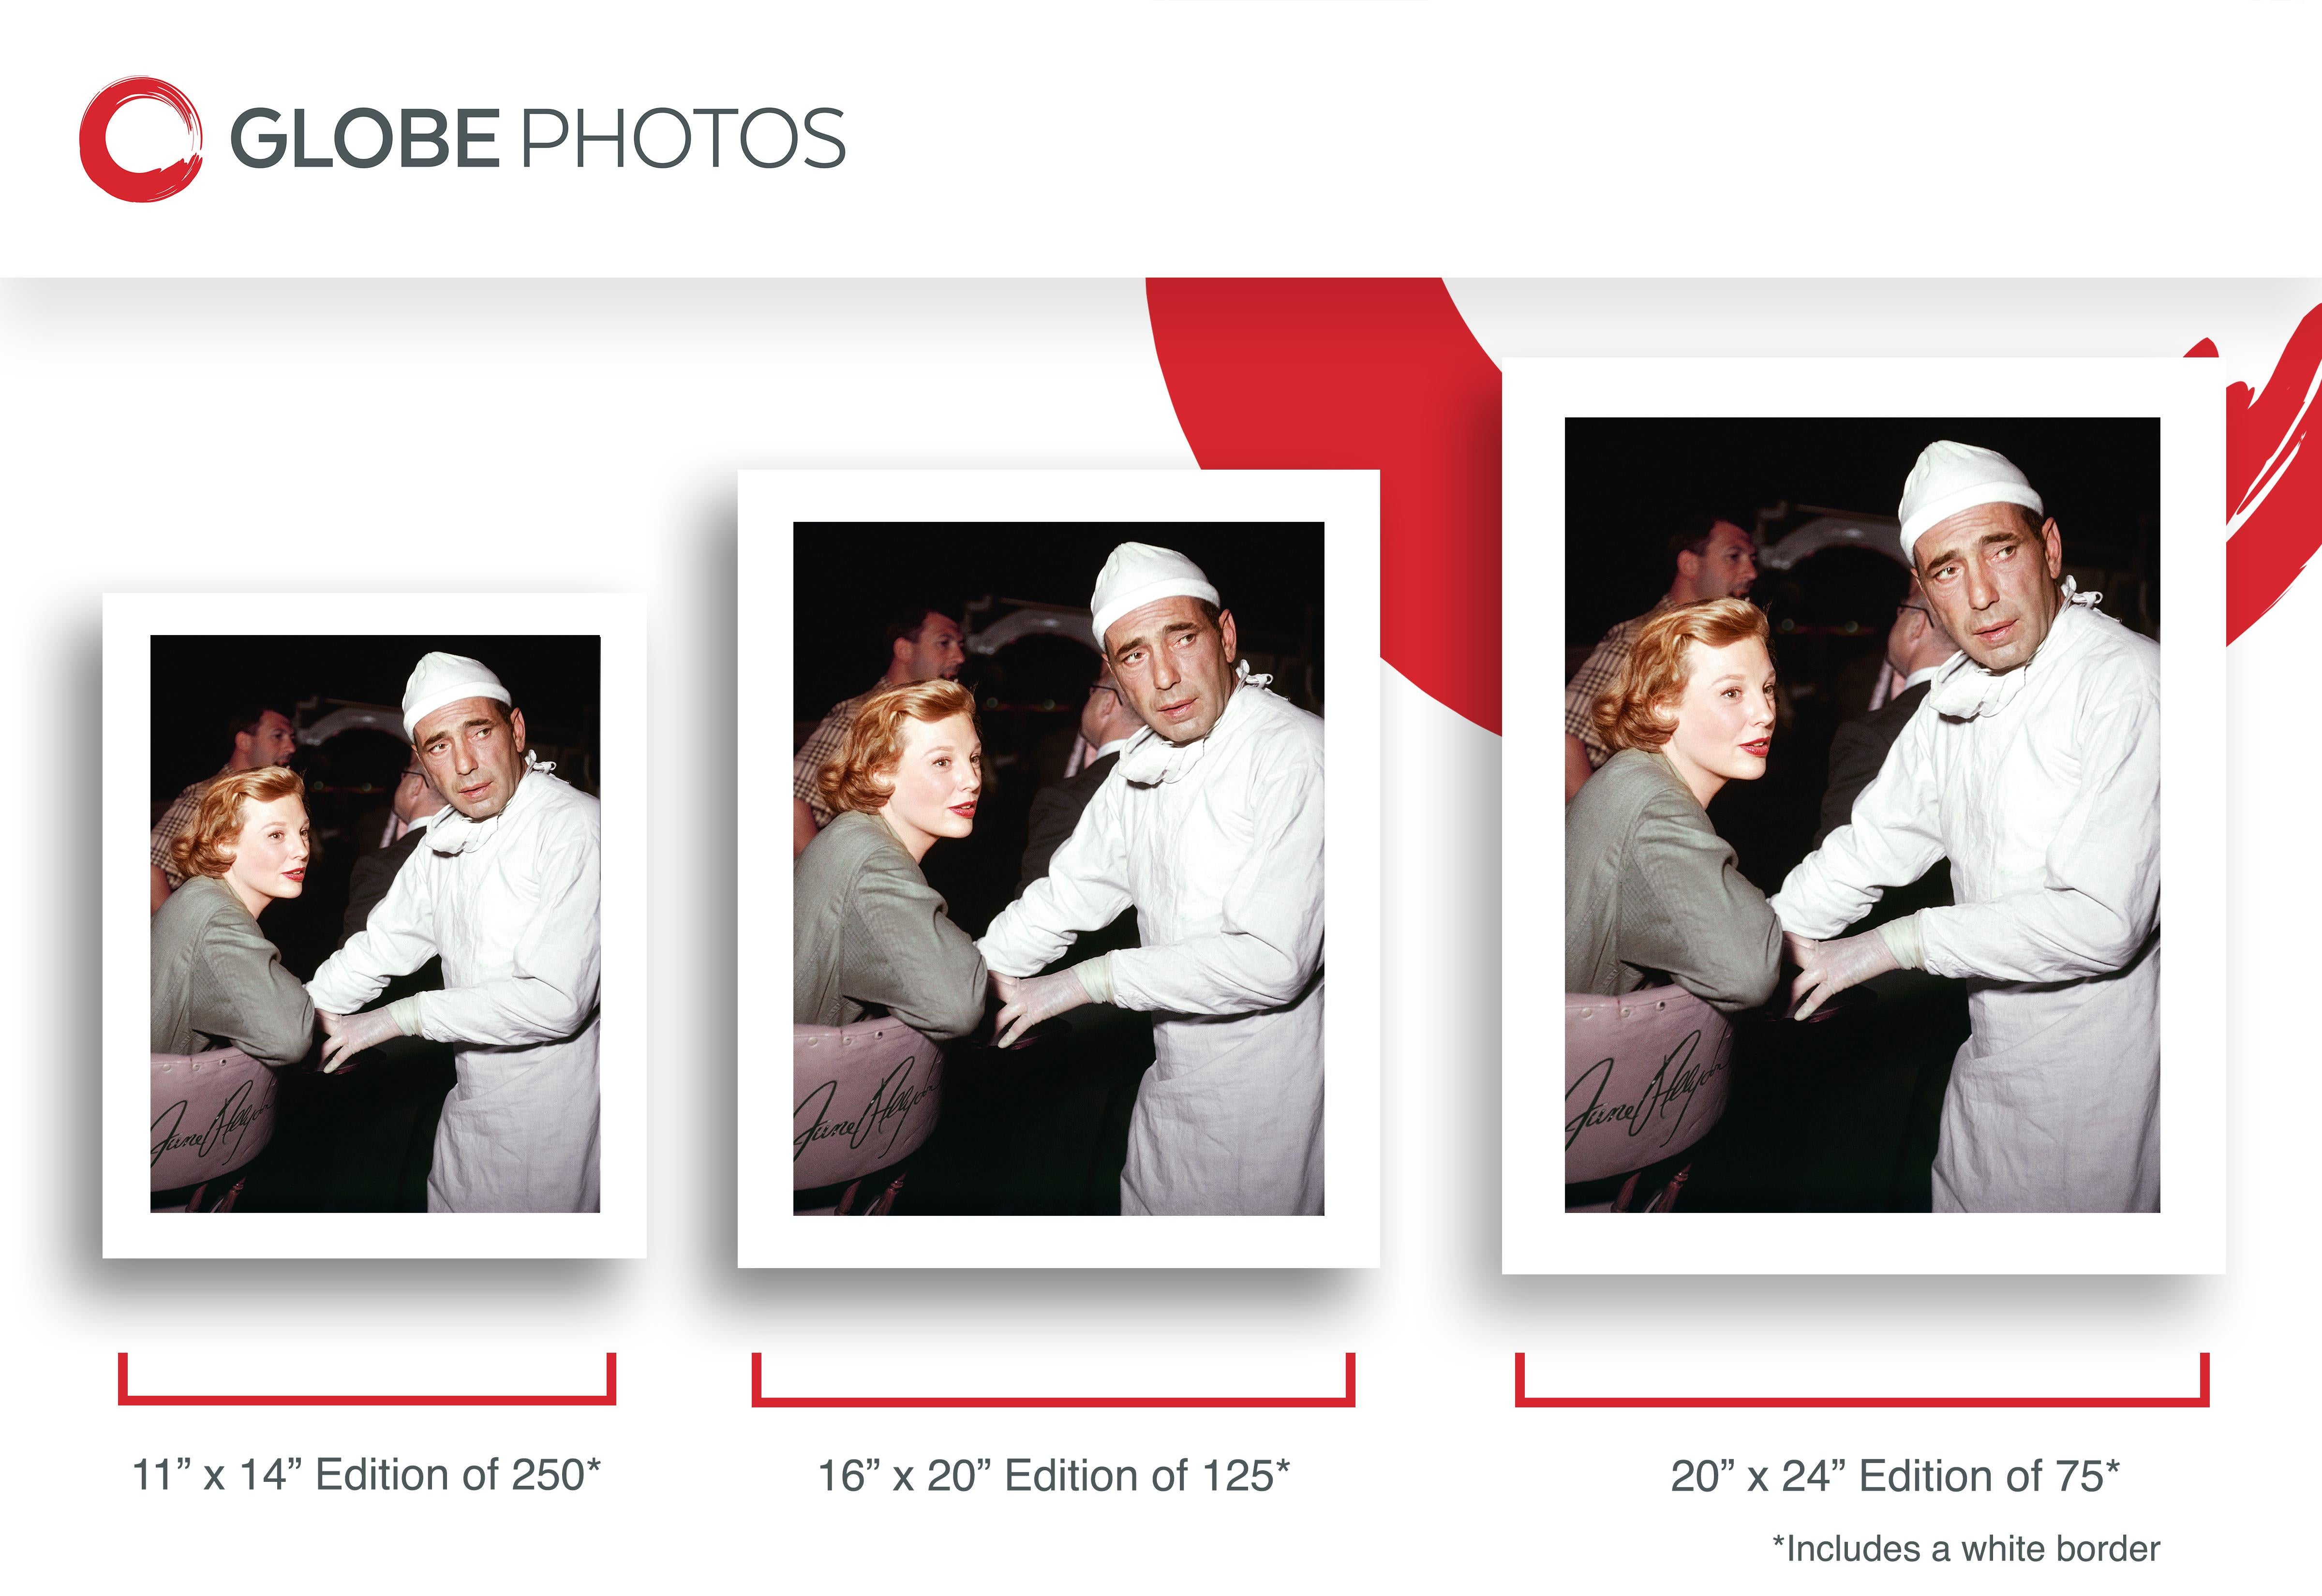 Humphrey Bogart y June Allyson en el plató - Photograph Contemporáneo de Frank Worth